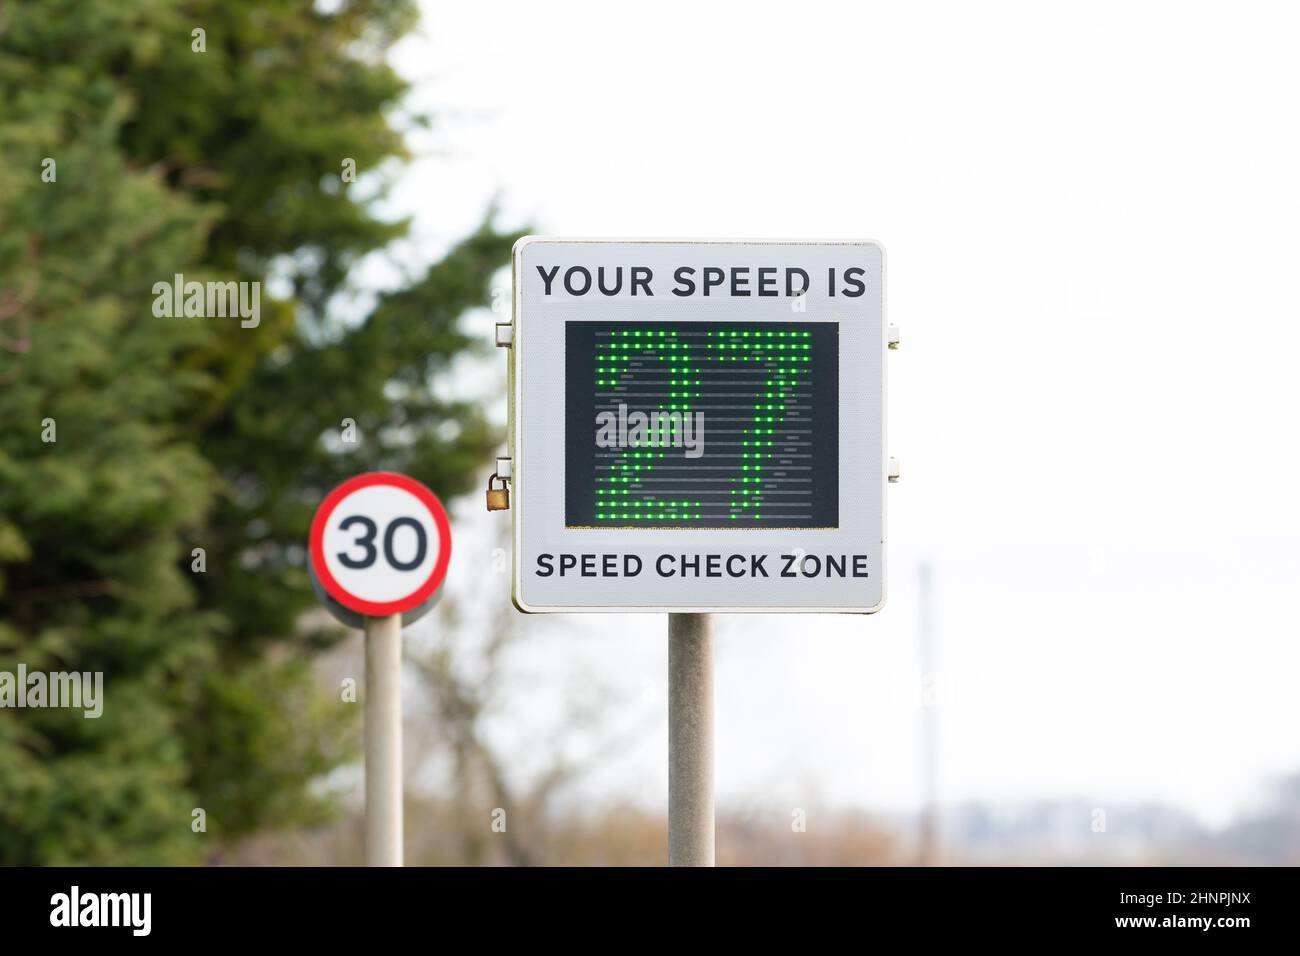 Geschwindigkeitsanzeige -Fahrzeug aktiviert Geschwindigkeitsschild zeigt Fahrer bewegt sich innerhalb der Geschwindigkeitsbegrenzung bei 27mph in 30mph Bereich in Dorf, England Großbritannien Stockfoto